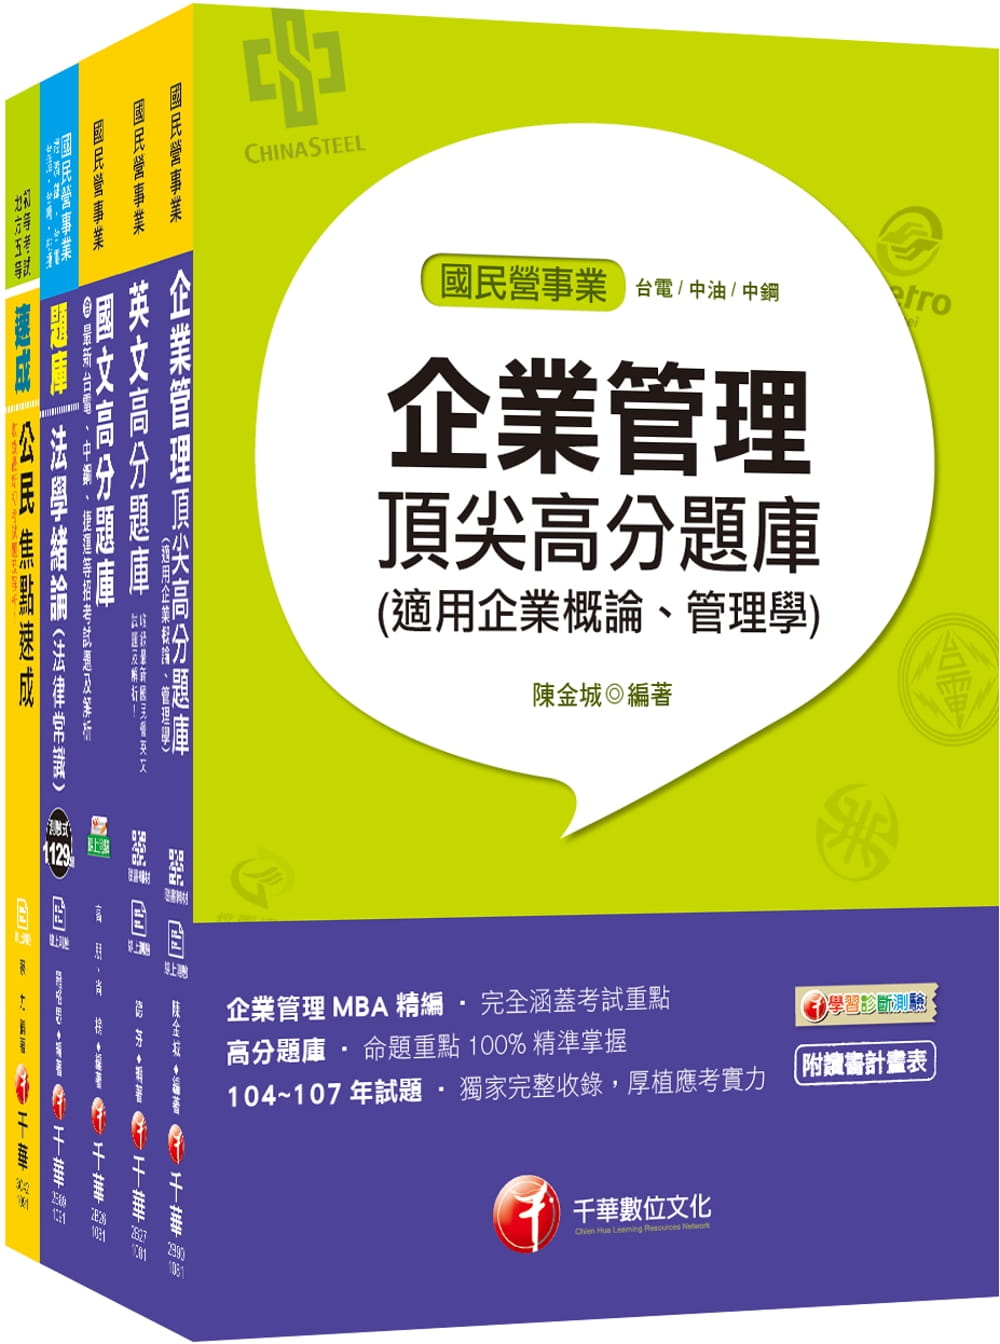 109年《技術士操作類-甲(機電)》台灣自來水公司評價職位人員題庫套書